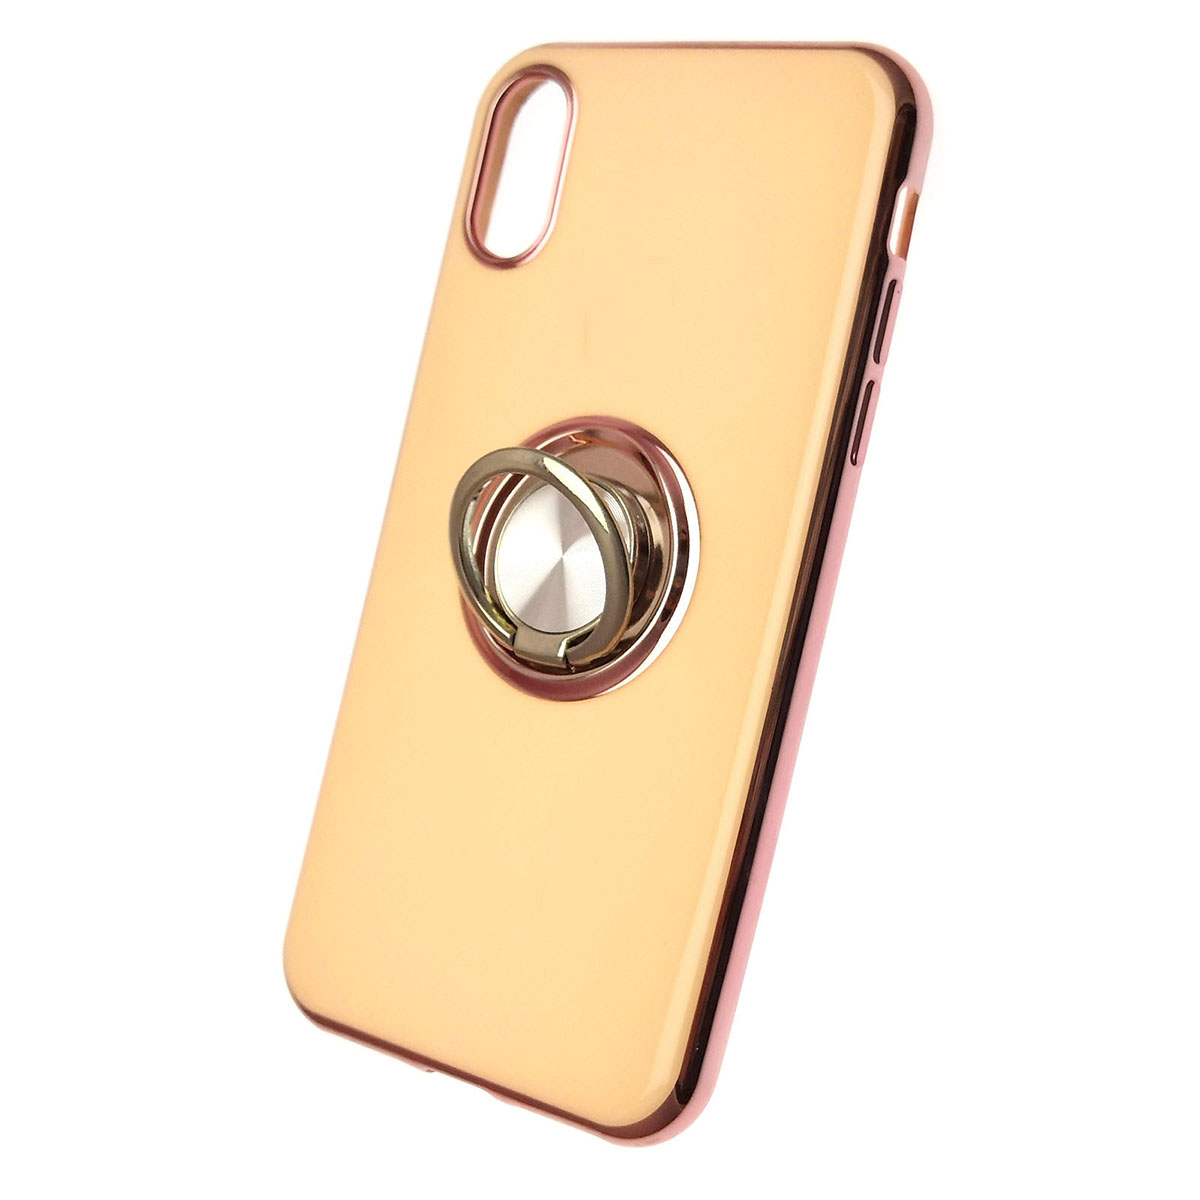 Чехол накладка для APPLE iPhone X, XS, силикон, глянец, с логотипом, кольцо держатель, цвет молочный.